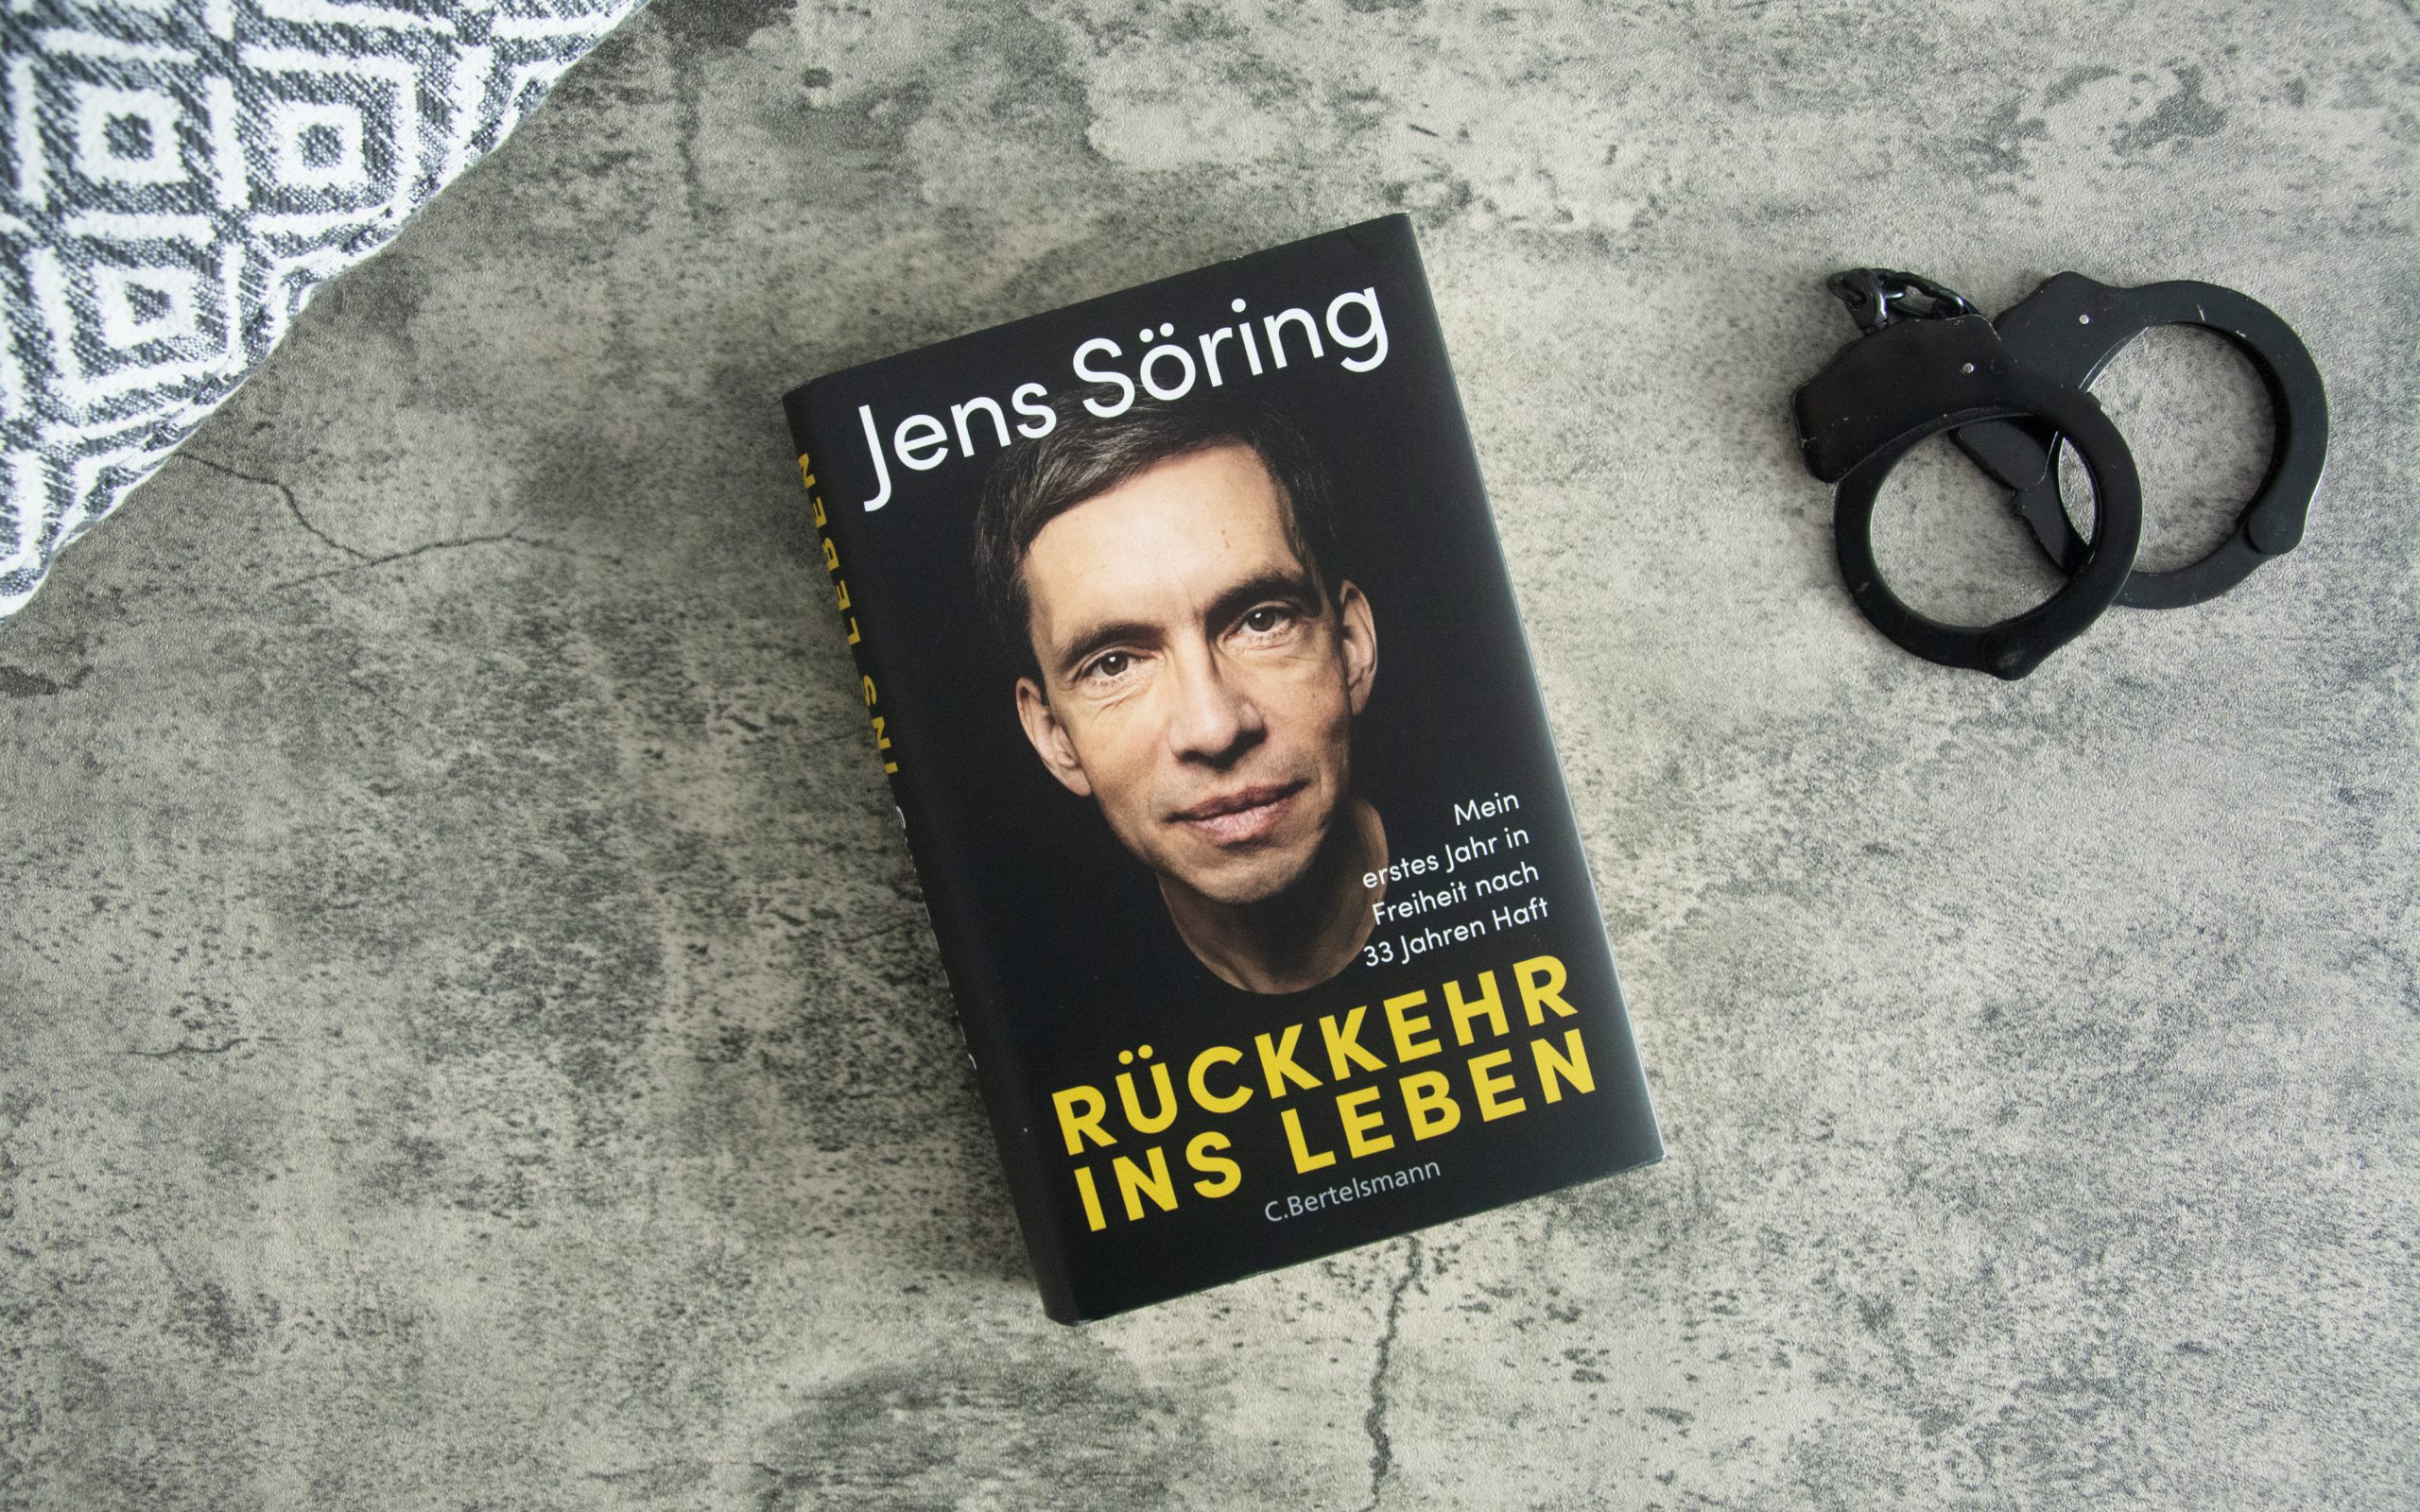 »Rückkehr ins Leben: Mein erstes Jahr in Freiheit nach 33 Jahren Haft« von Jens Söring